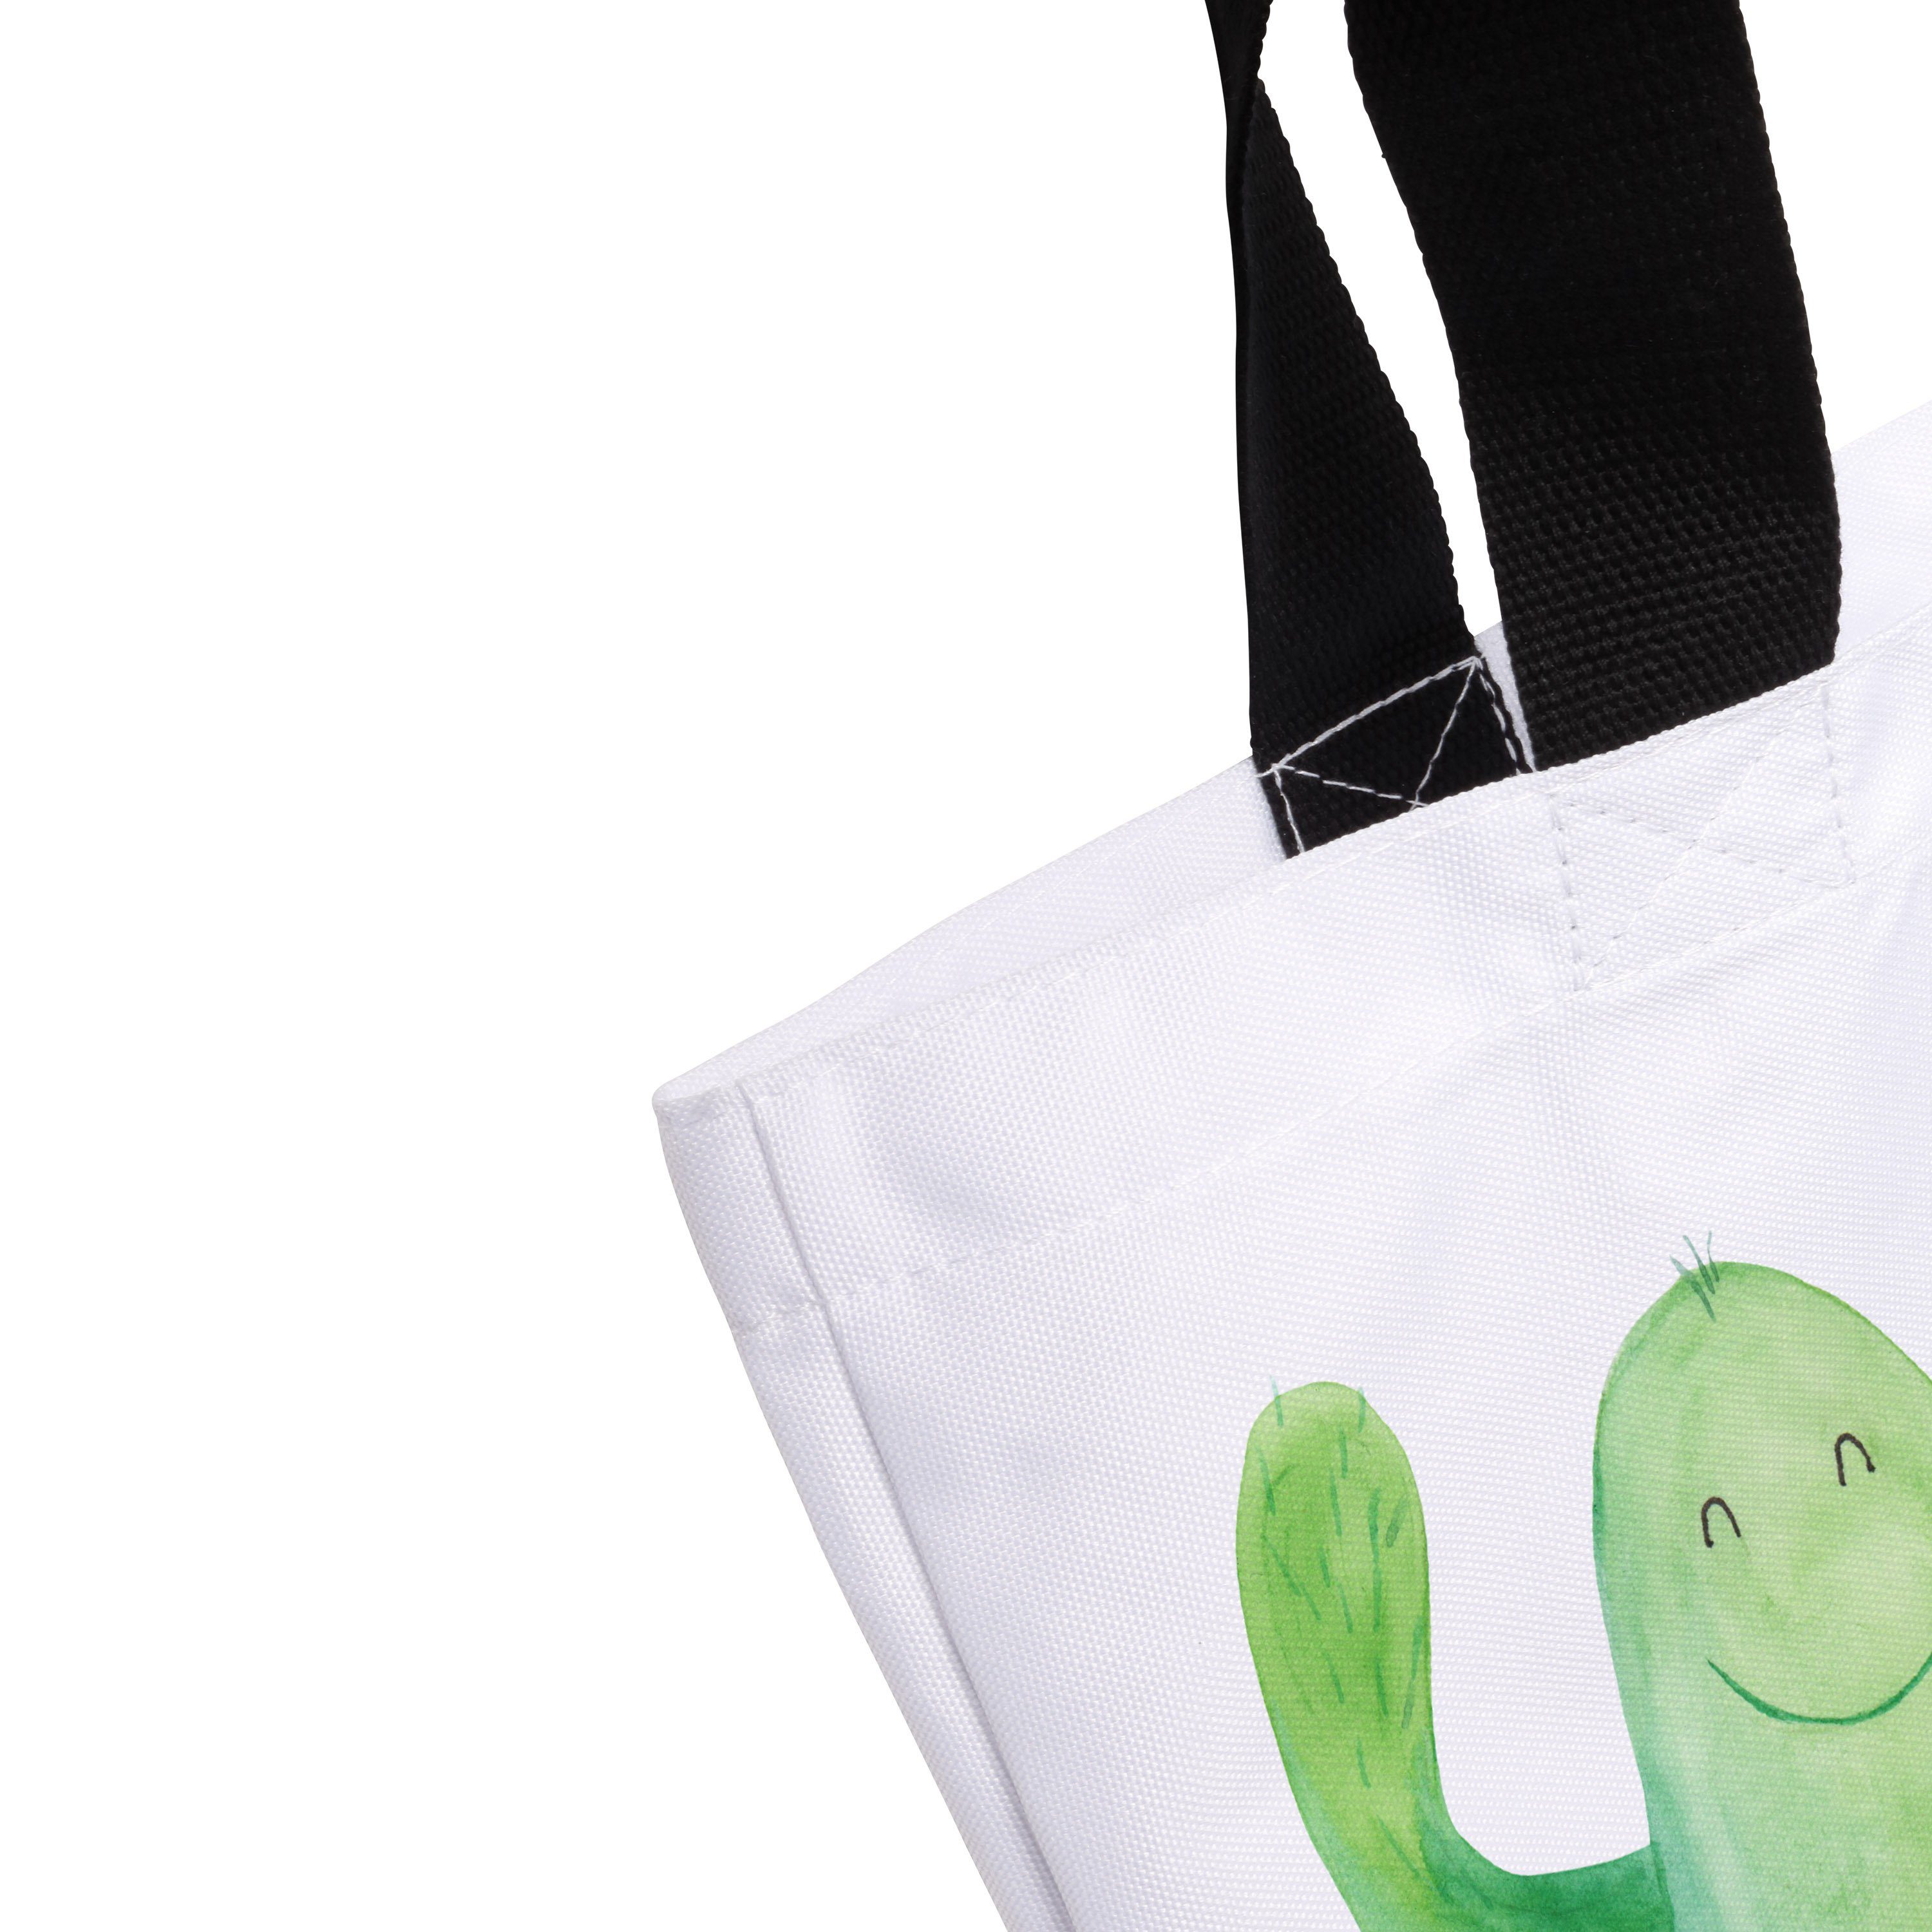 Shopper Panda Einkaufstasche, Happy (1-tlg) - Kaktus Beutel, & Geschenk, Weiß Mr. - Mrs. Schulbeutel,